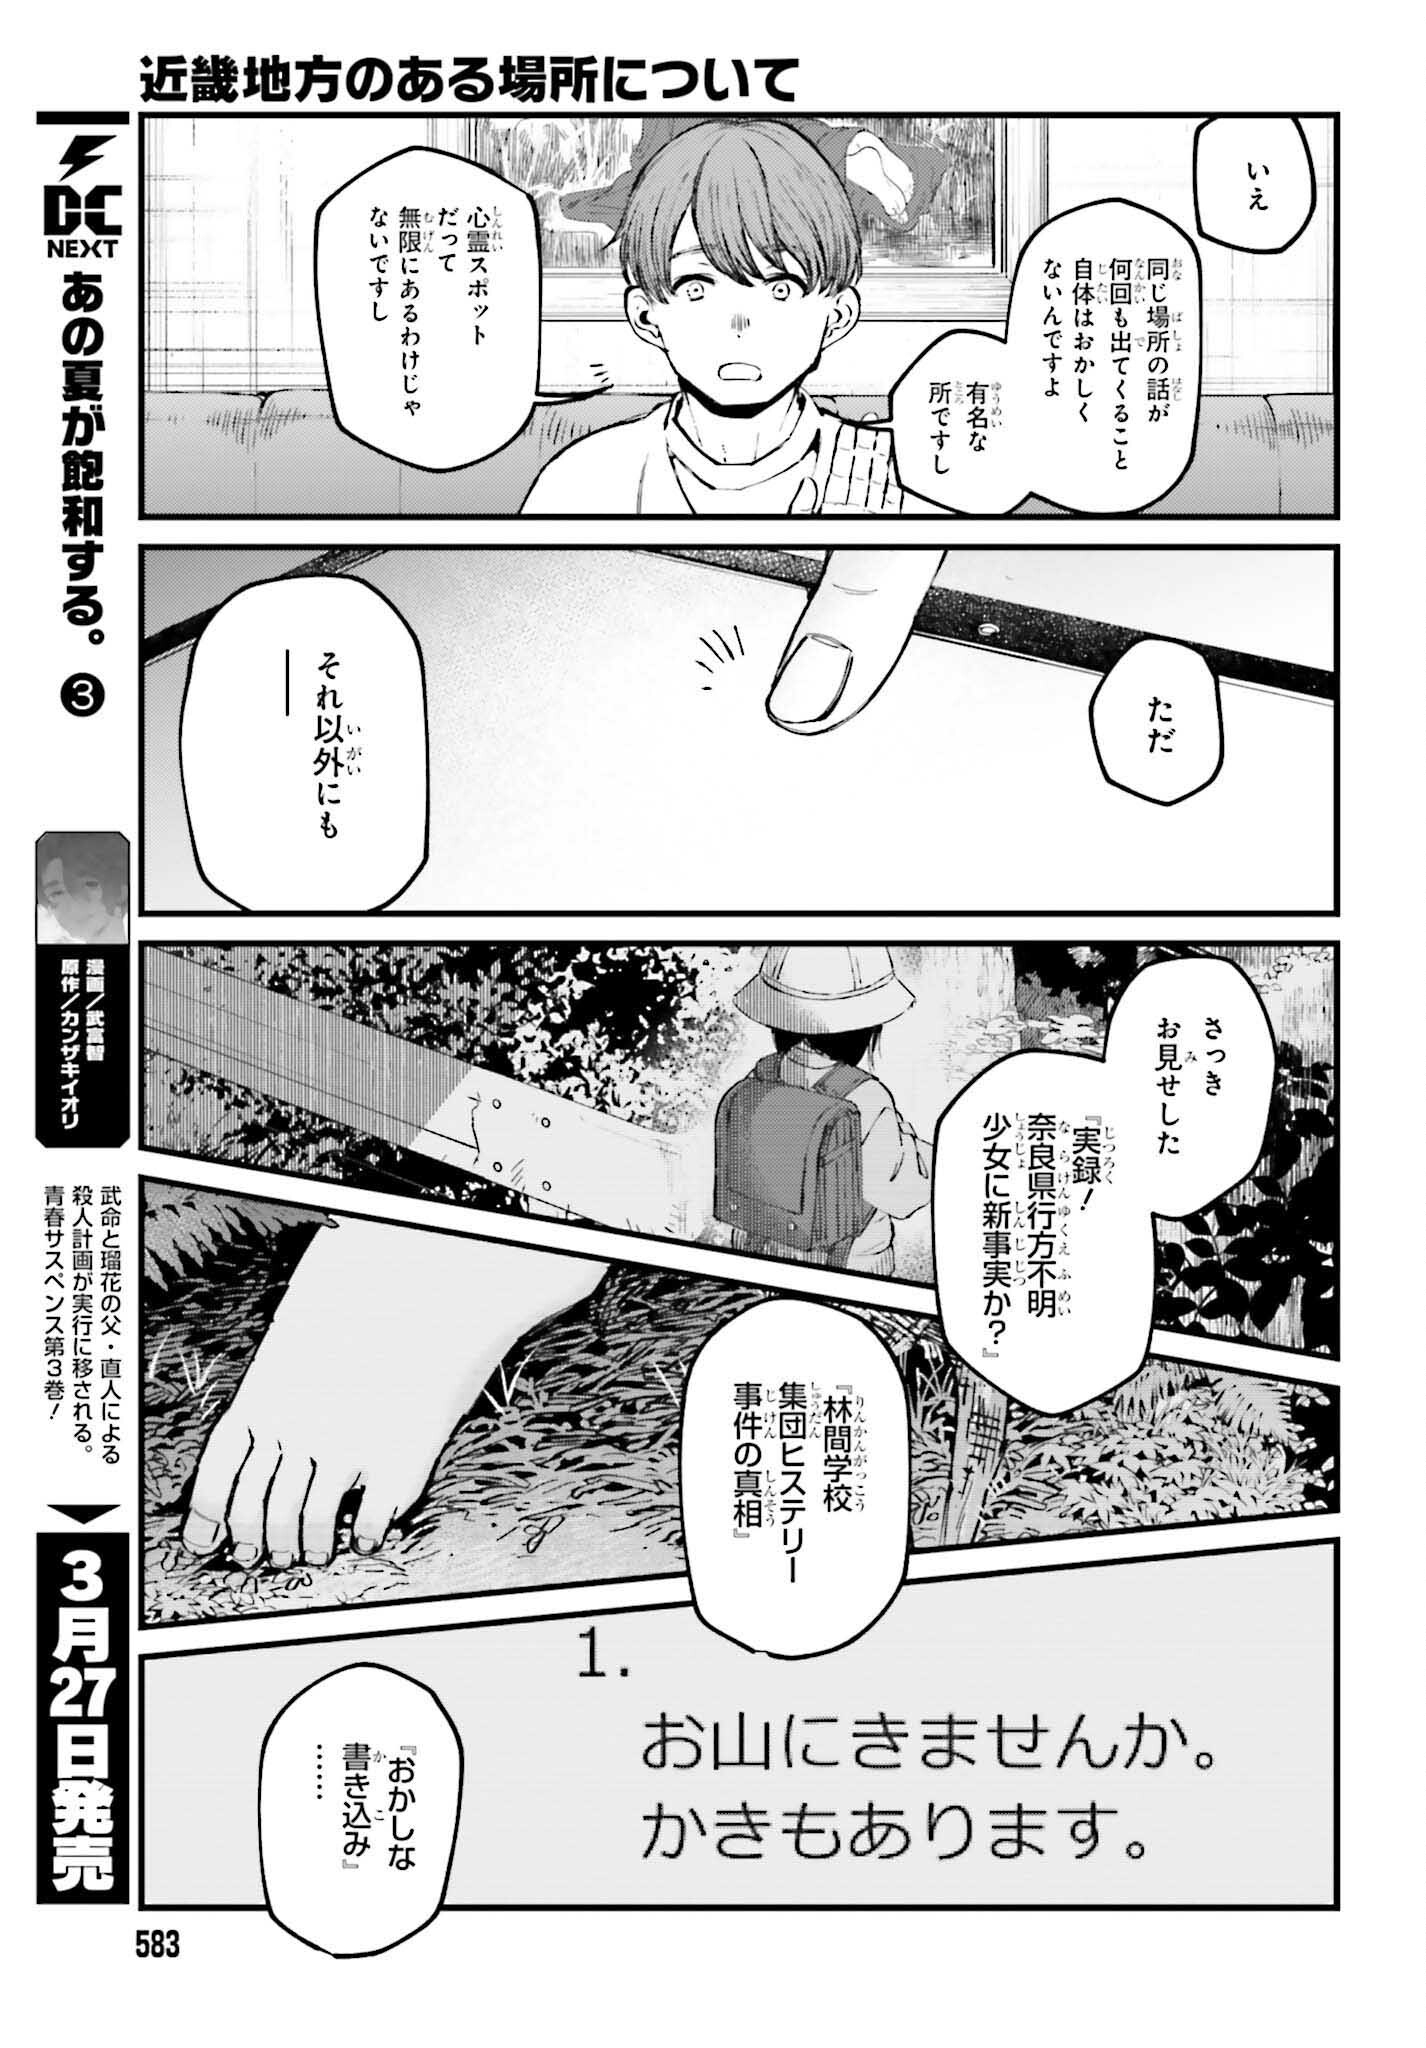 Kinki Chihou no Aru Basho ni Tsuite - Chapter 4 - Page 3